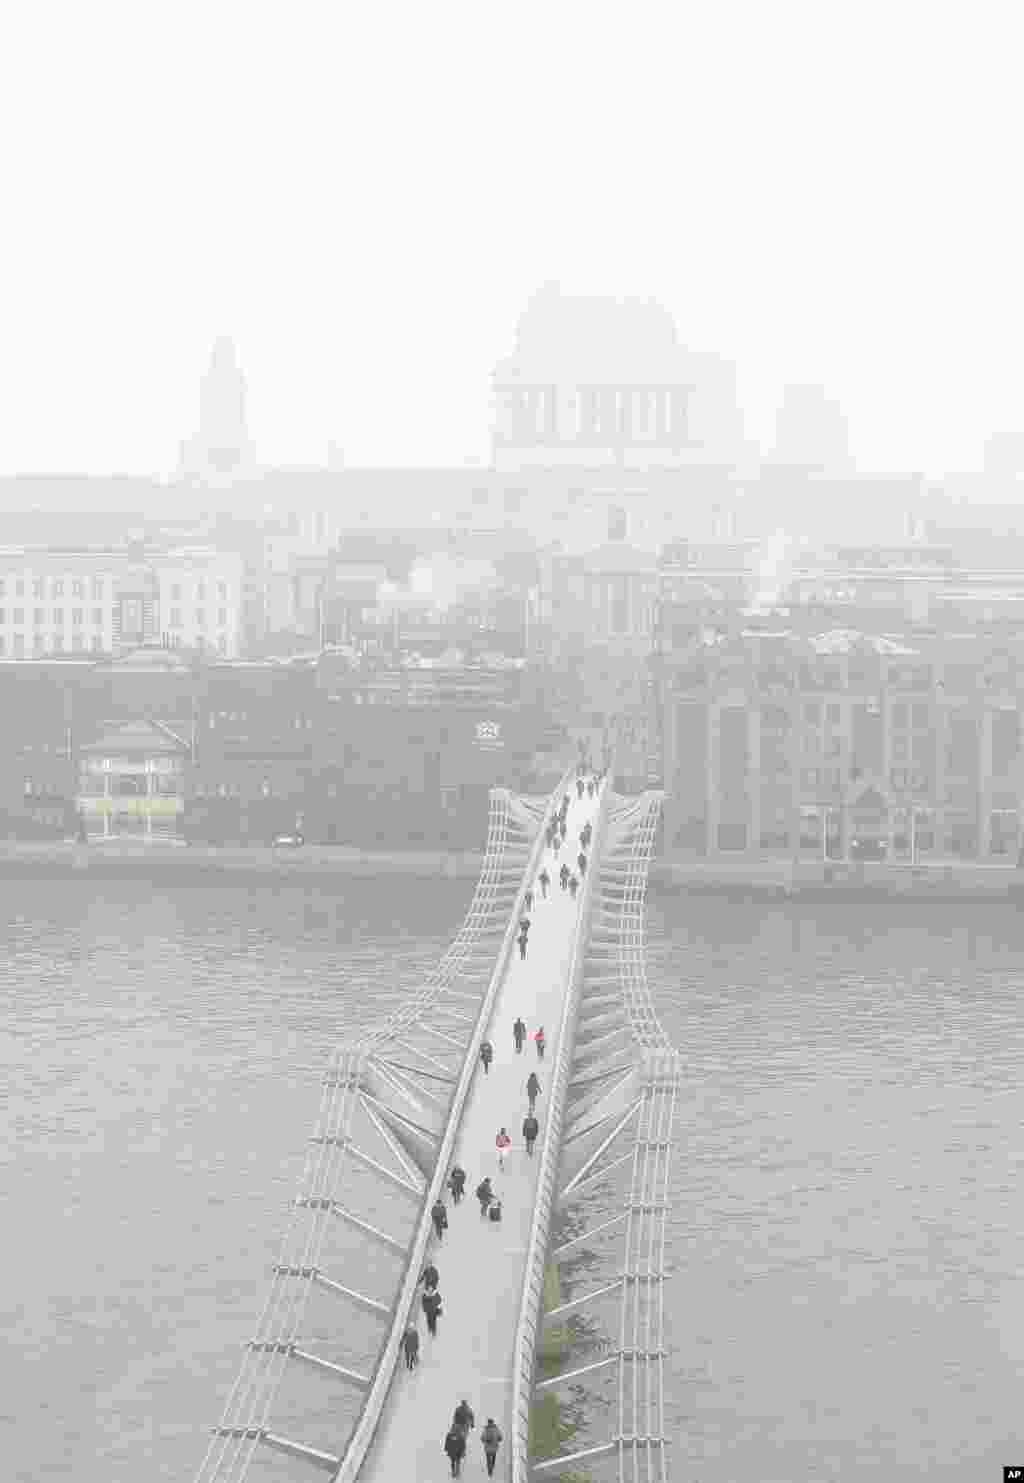 Para pejalan kaki melintasi jembatan Millennium sementara kabut menyelimuti gereja Kathedral St. Paul di London, Inggris.